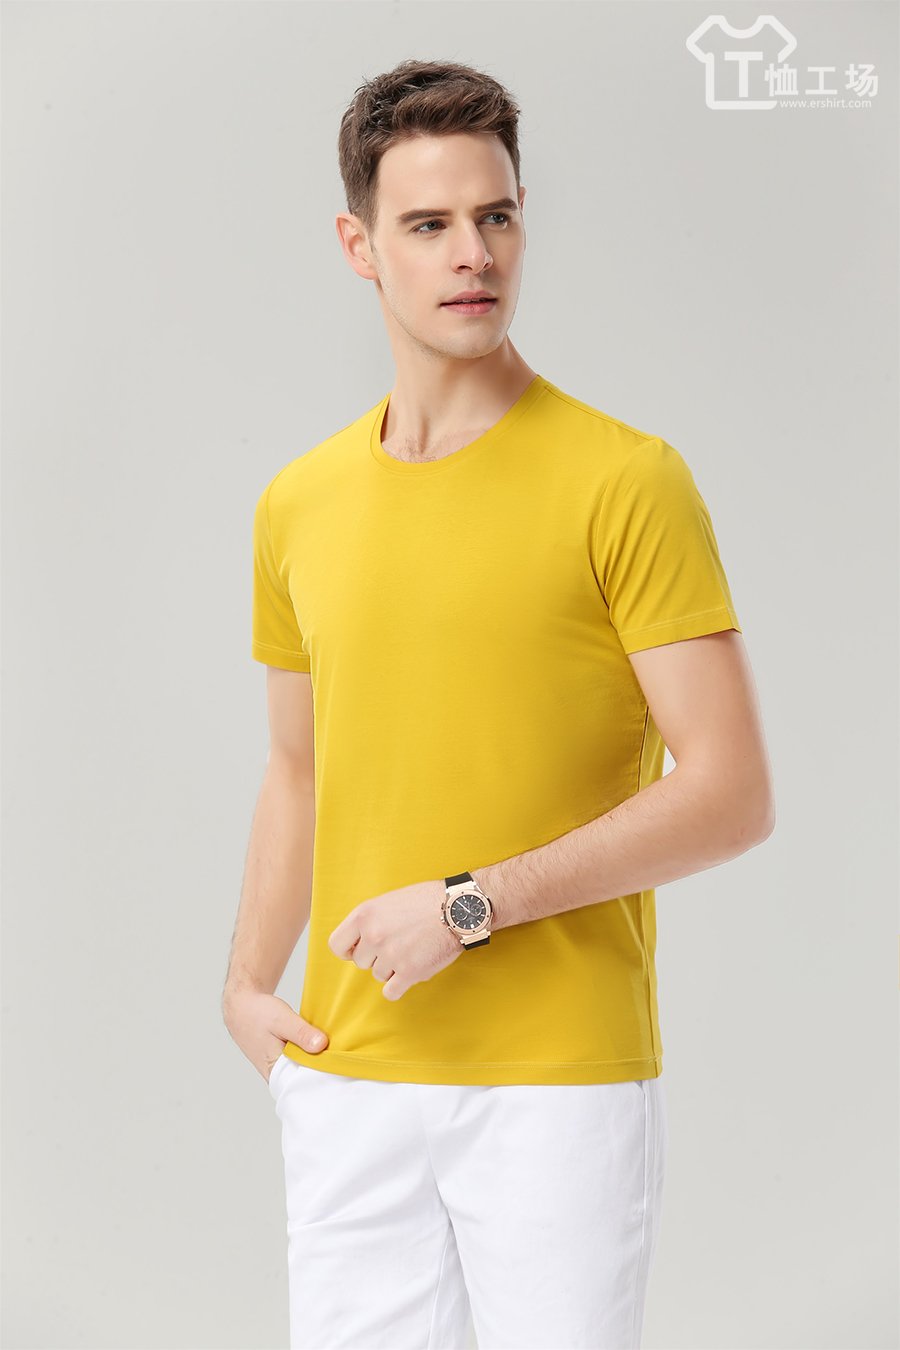 高档黄色T恤3